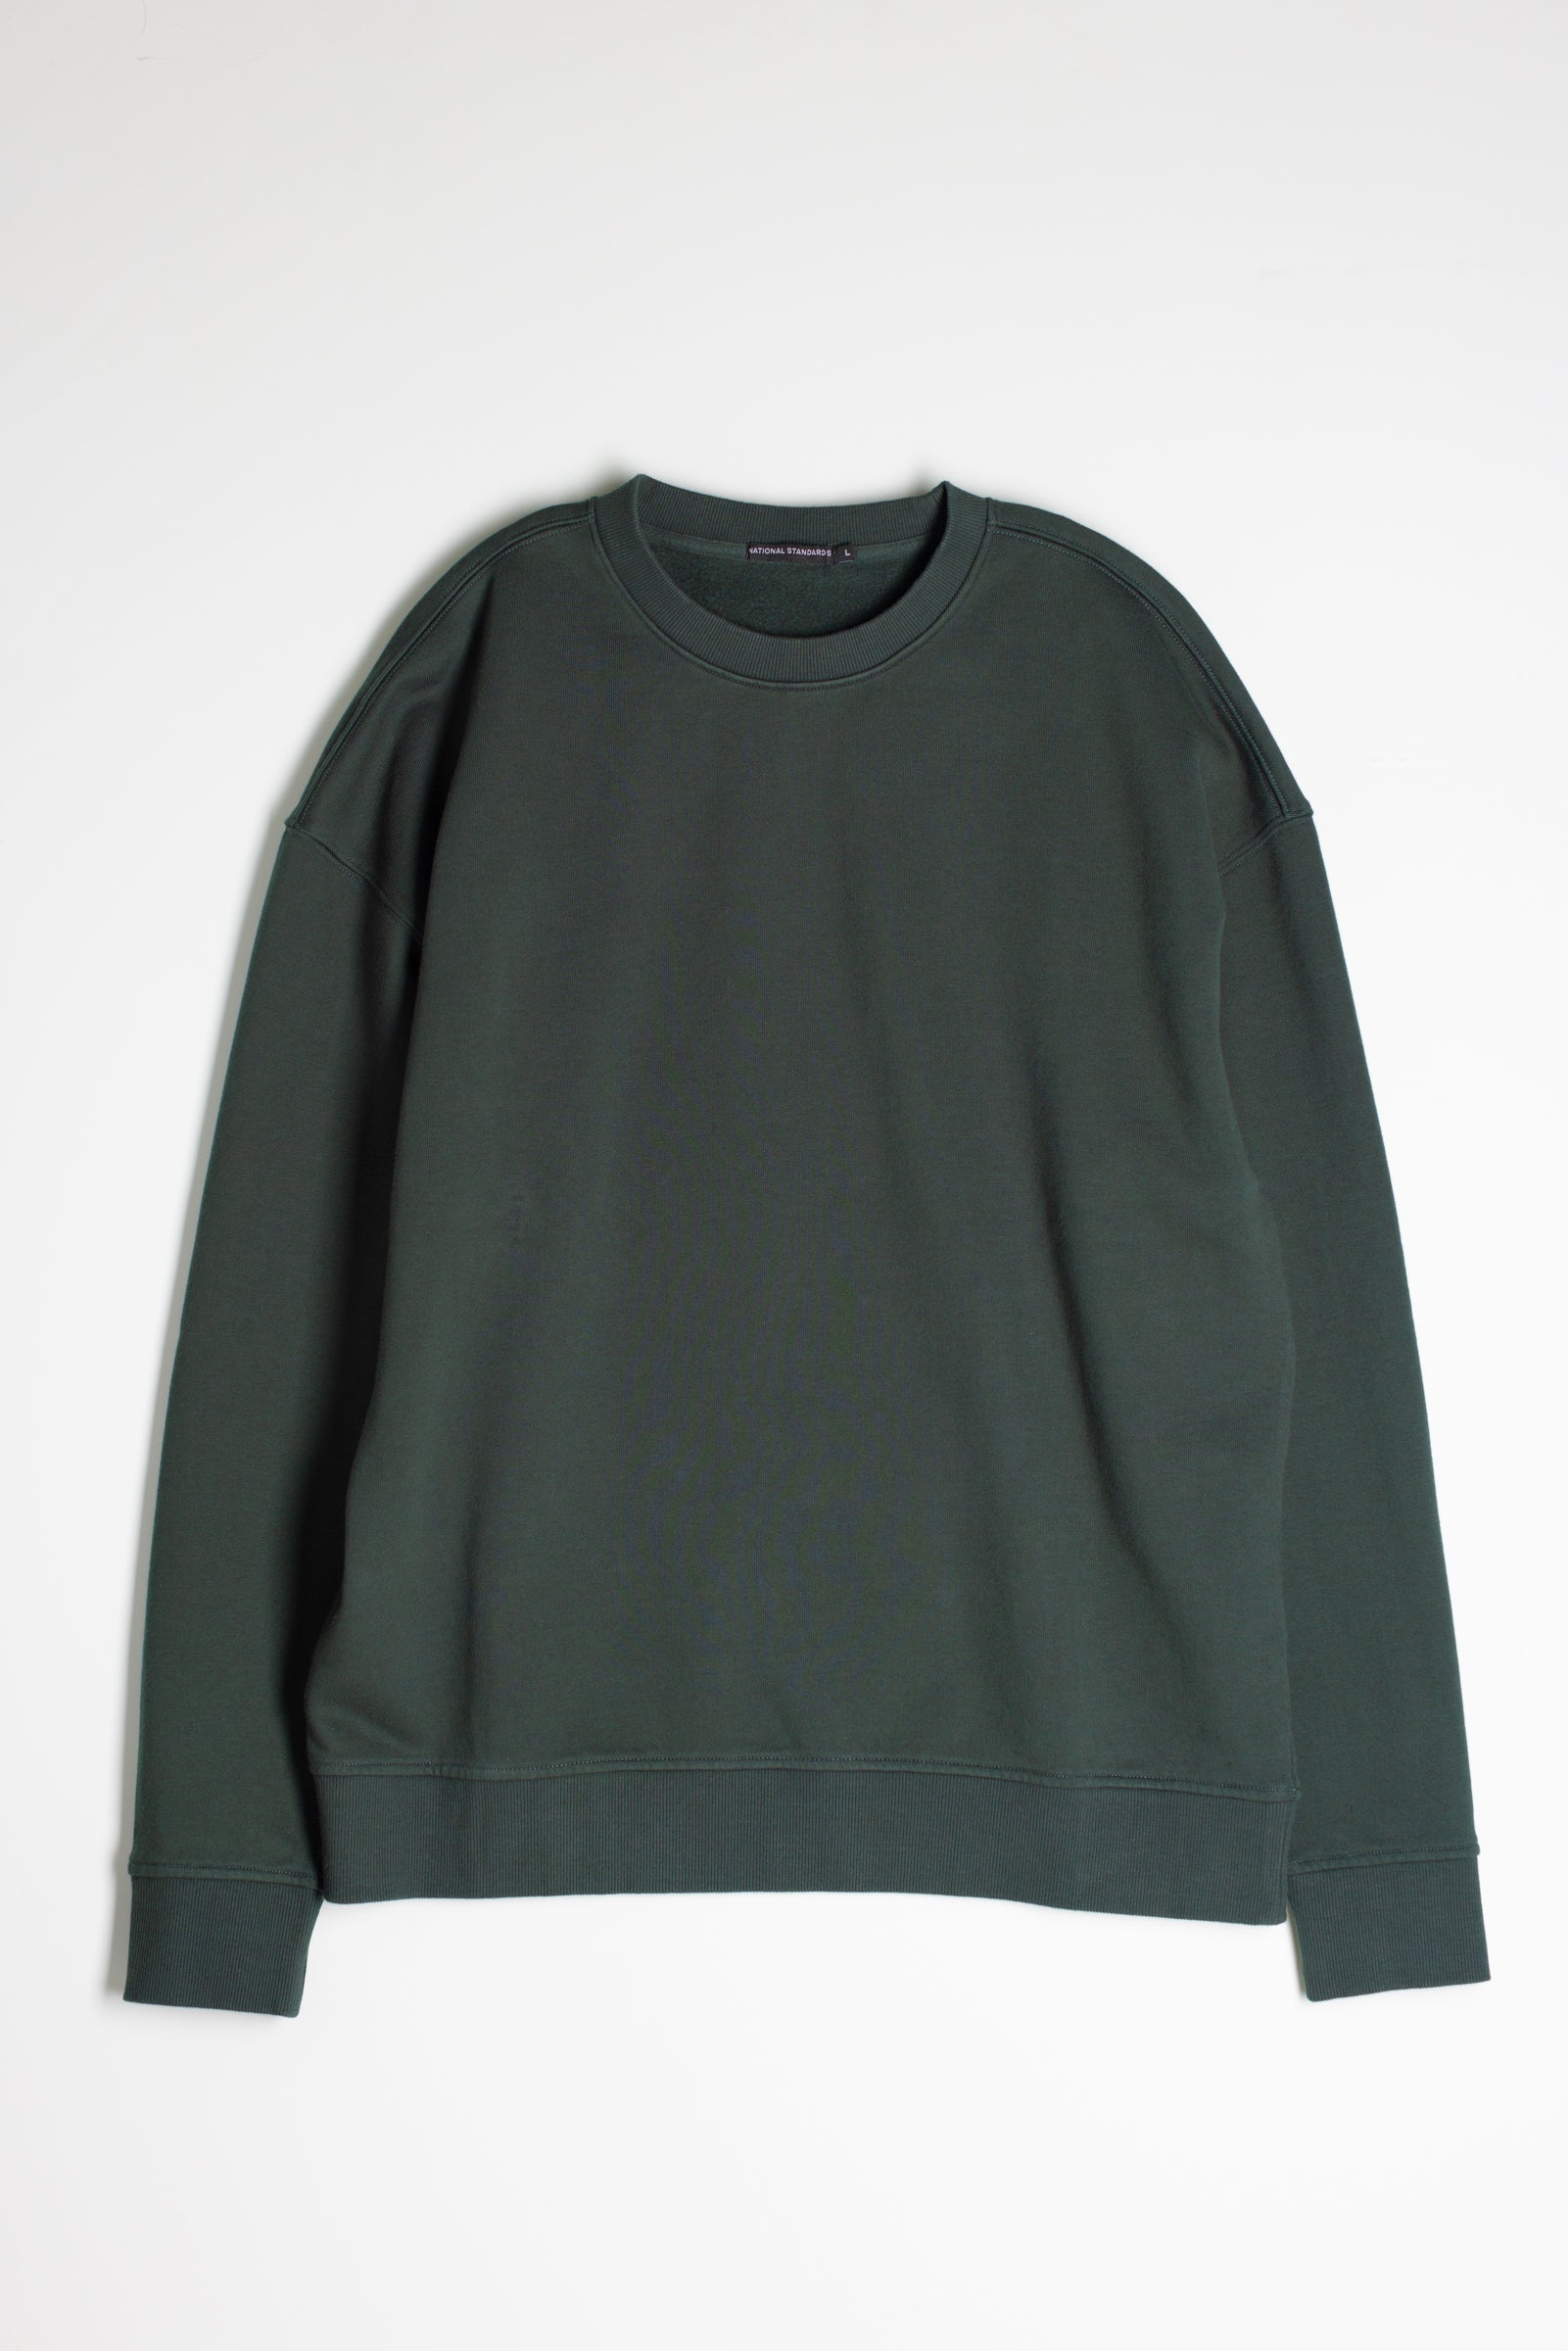 Cotton Fleece Sweatshirt in Hunter Green 01